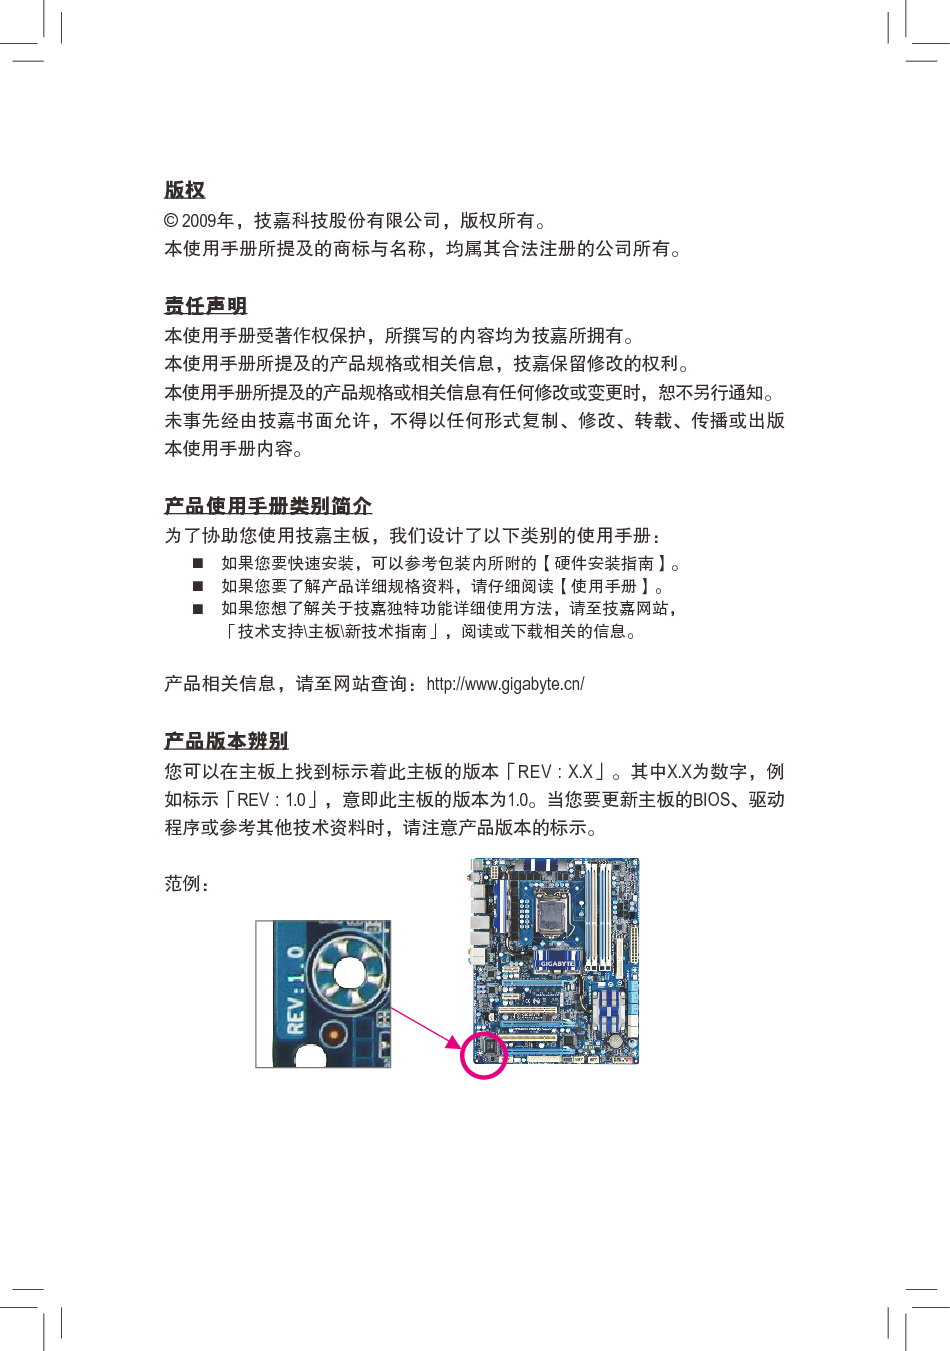 技嘉 Gigabyte GA-P55-USB3 1001版 使用手册 第2页